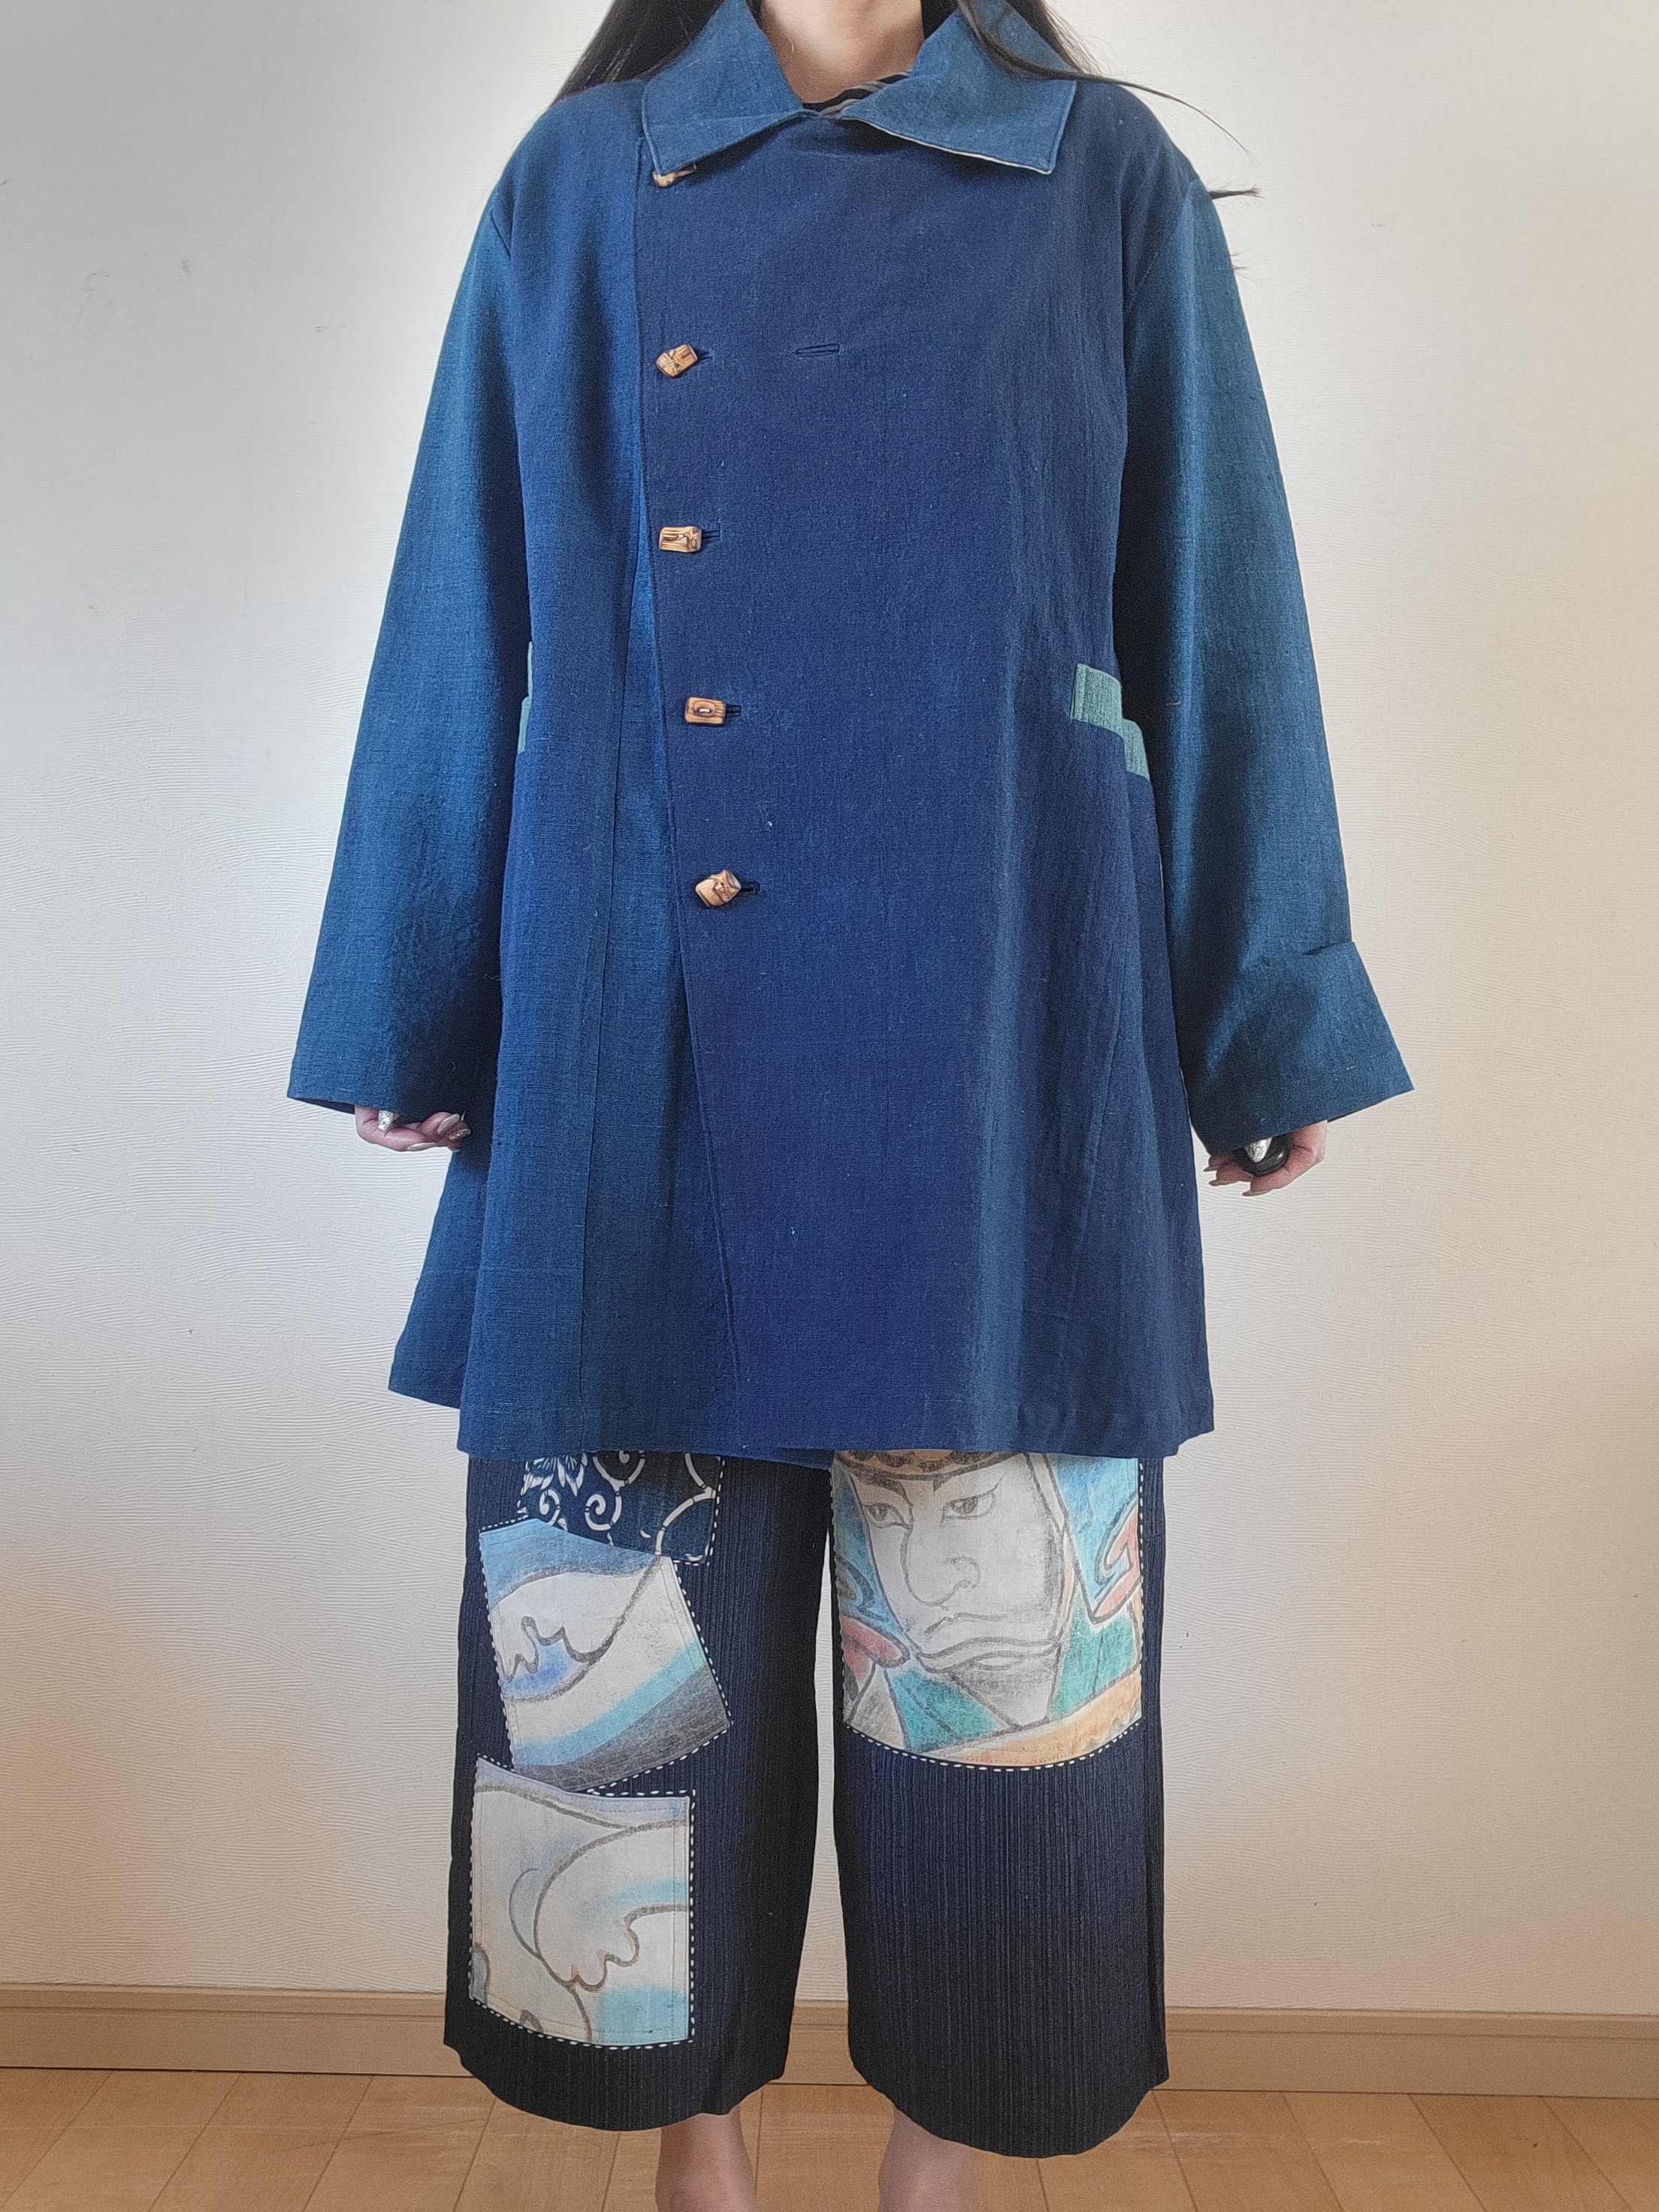 着物リメイク、藍木綿とのぼり旗のコート♪超カッコいい!美品 | www